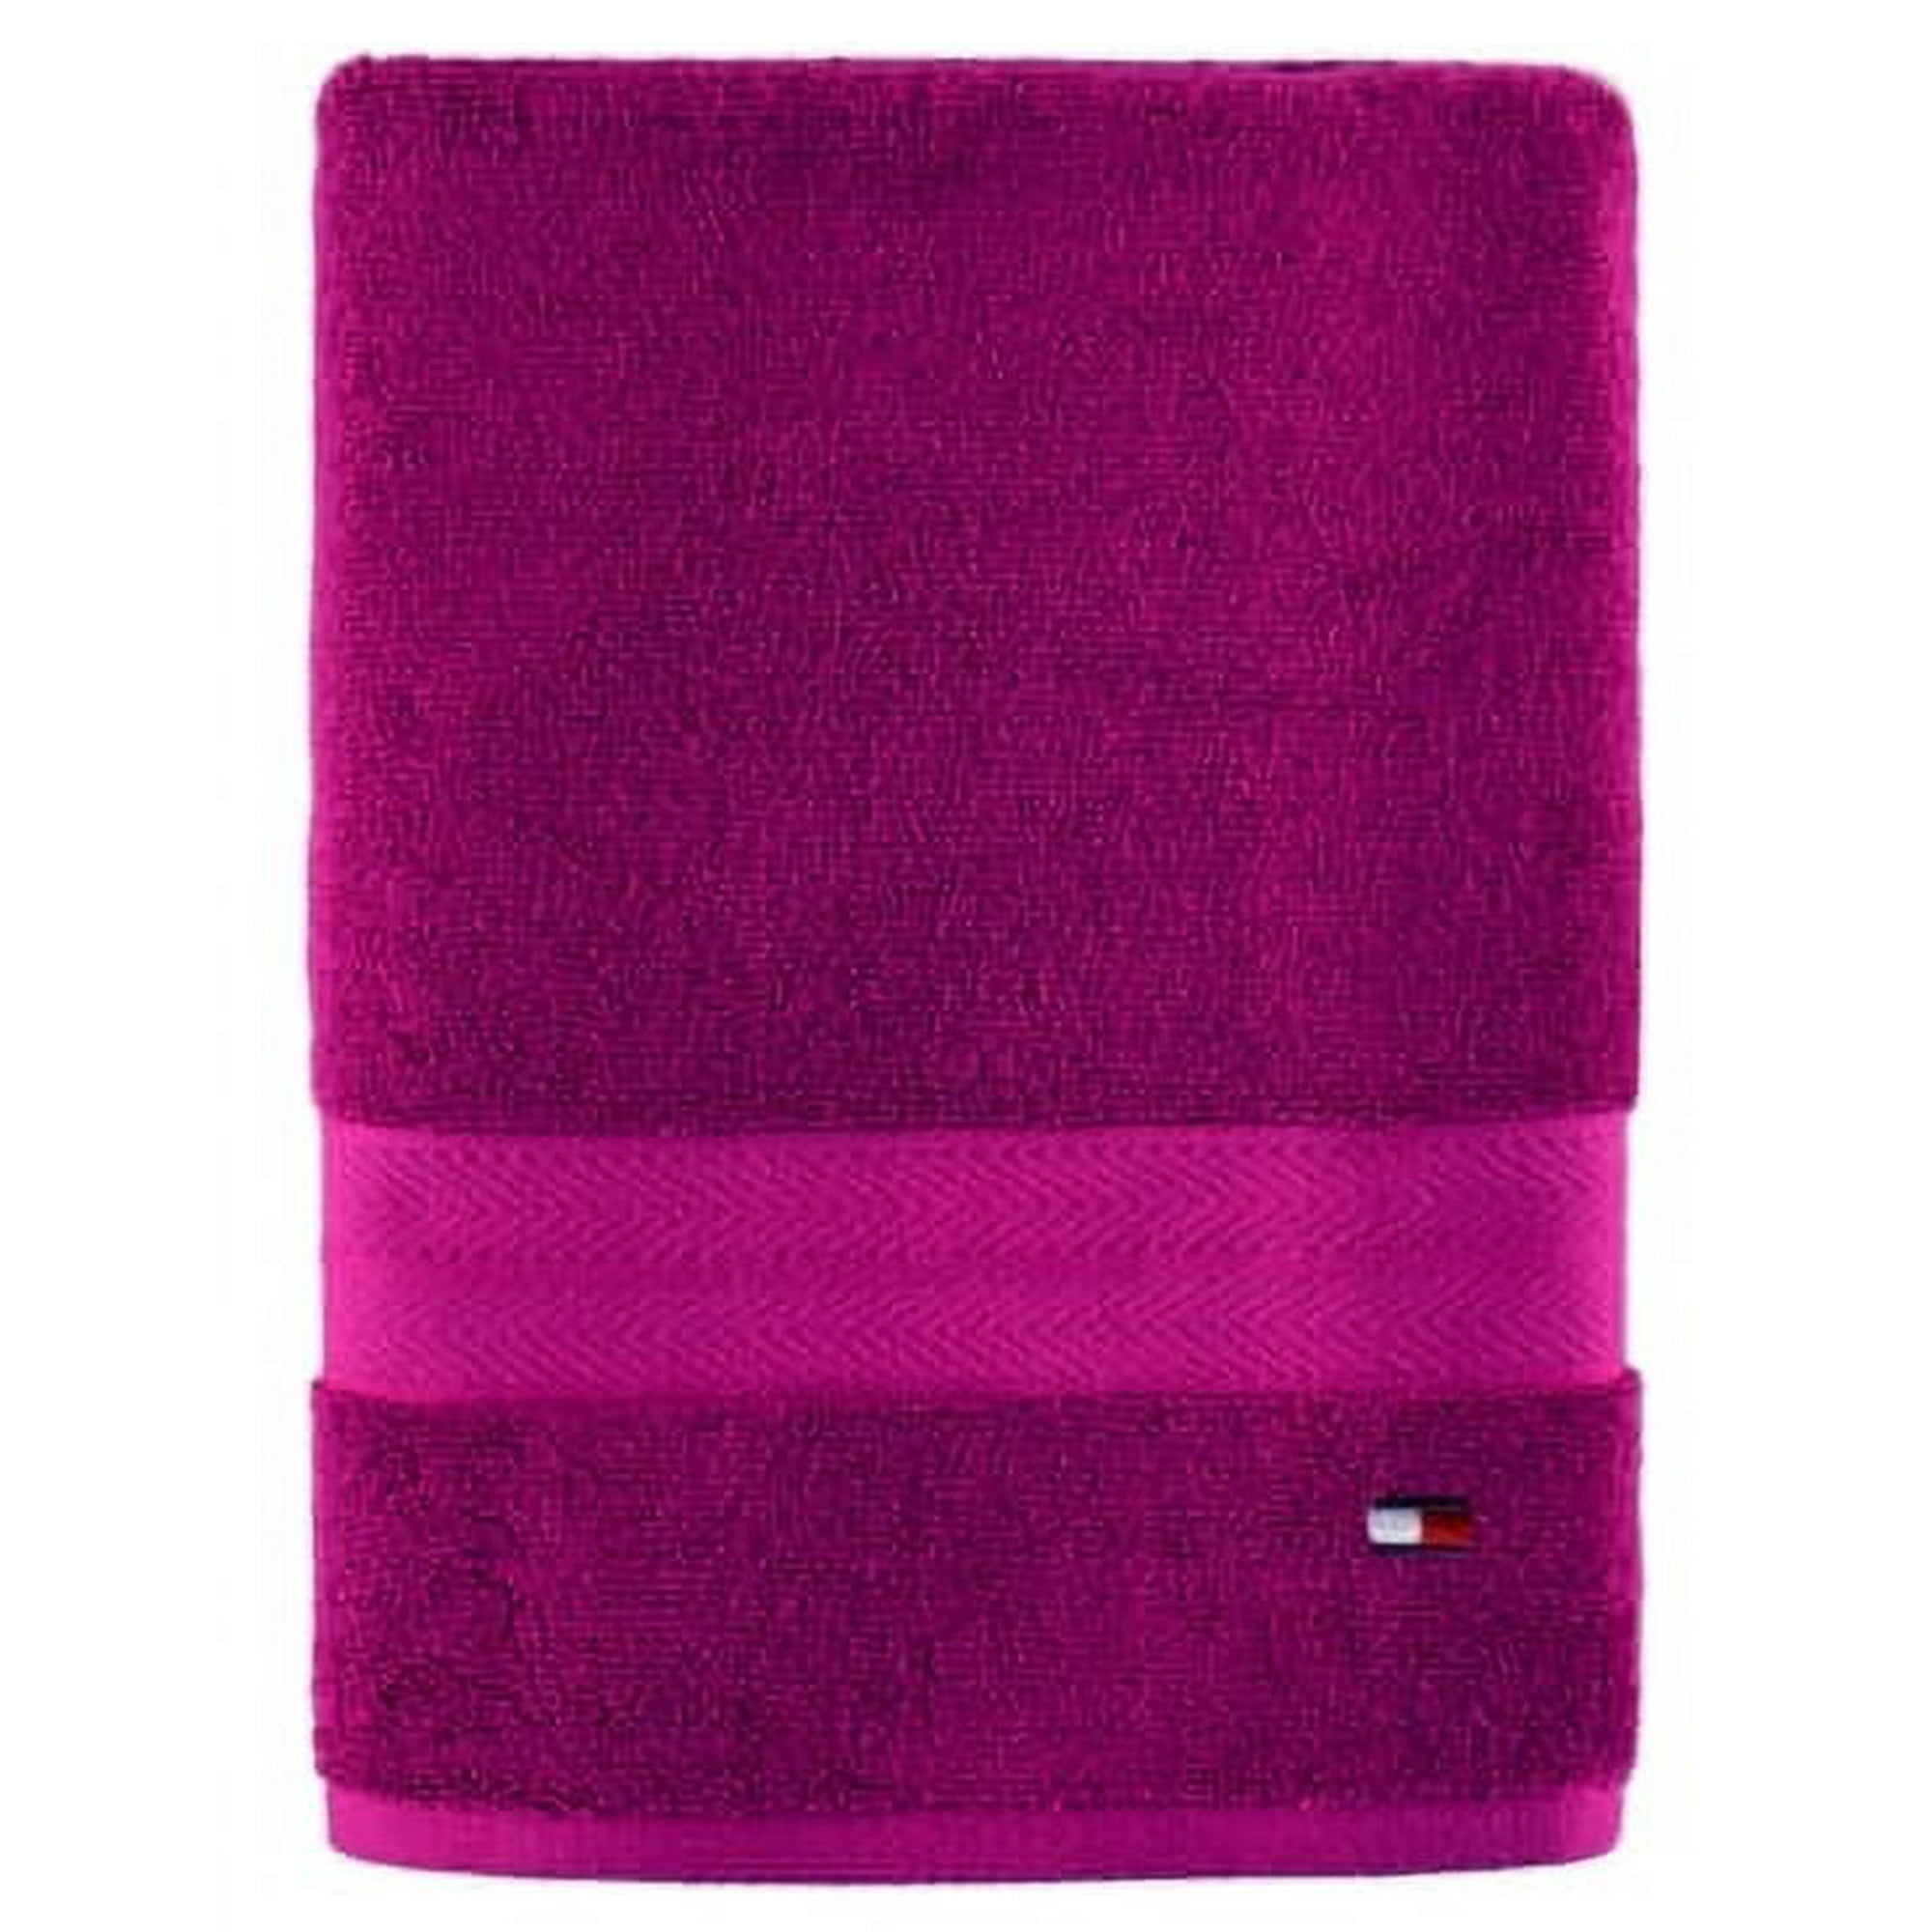 Tommy Hilfiger Bath Towel, 30 x 54 inch Walmart.com